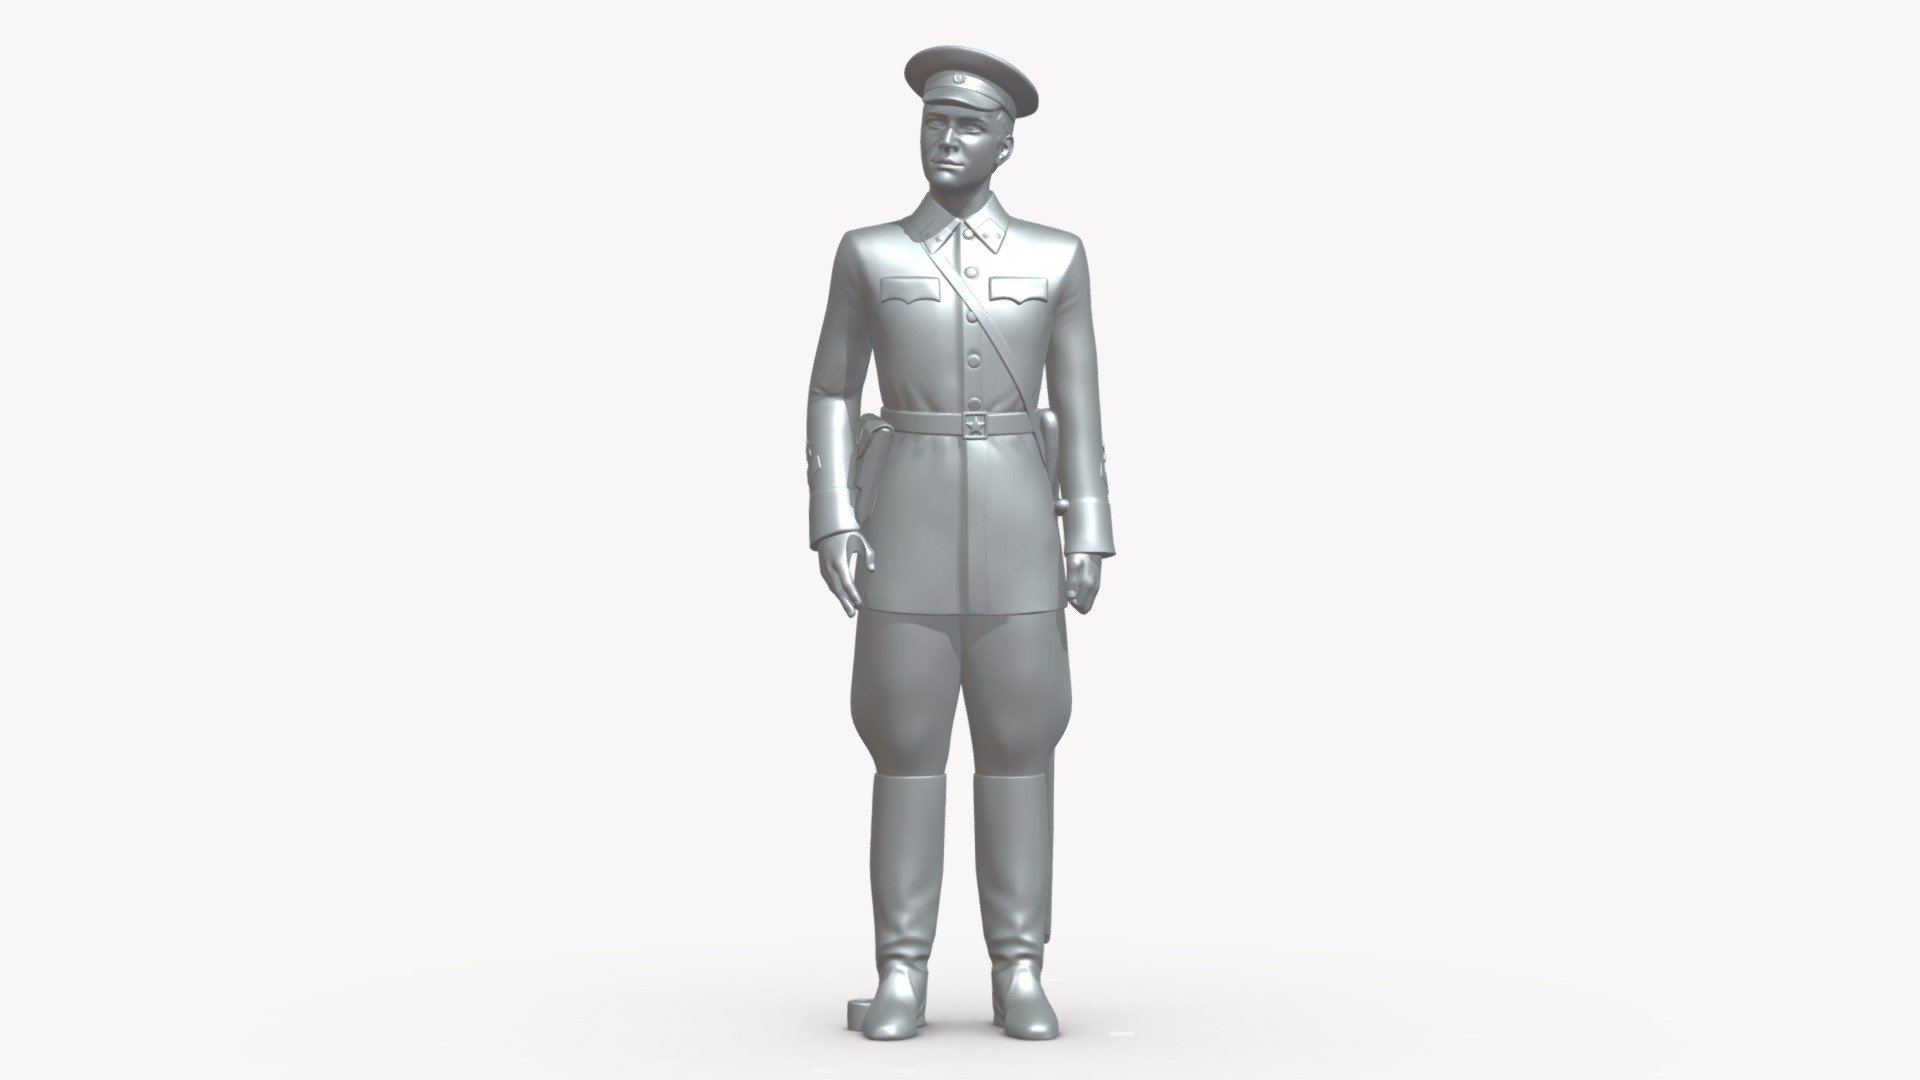 Man In Military Uniform 0116 3 Buy Royalty Free 3d Model By 3dfarm [0efb67a] Sketchfab Store